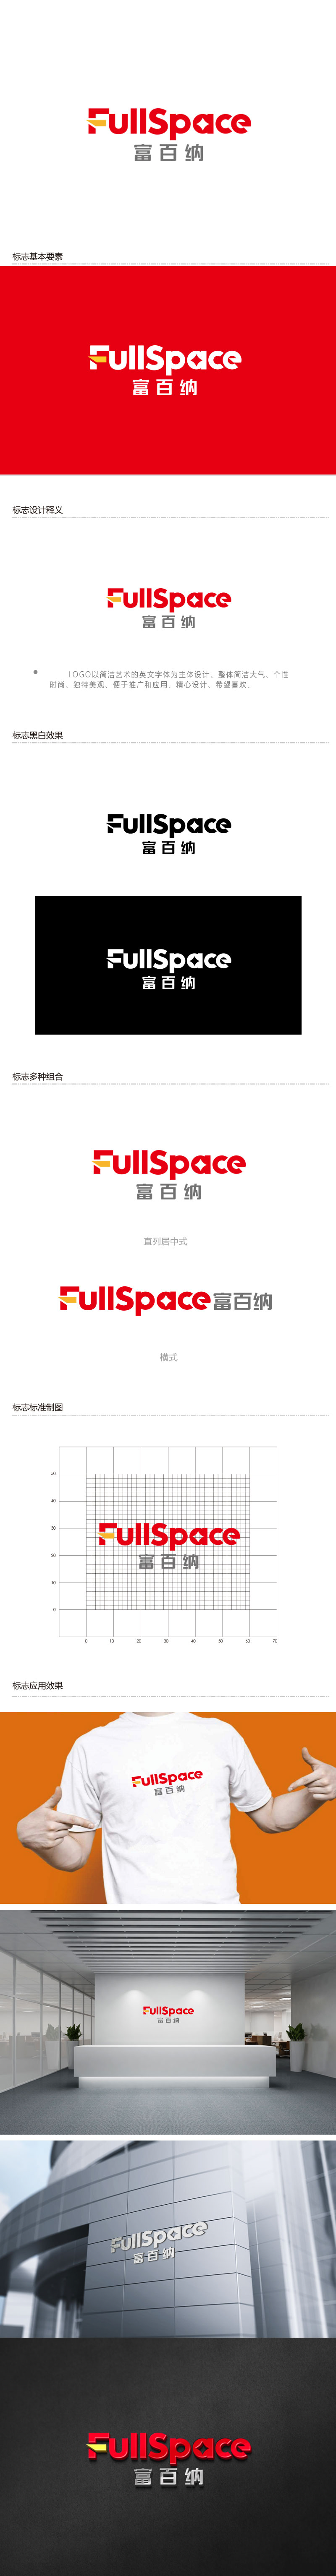 周金进的FullSpace富百纳logo设计